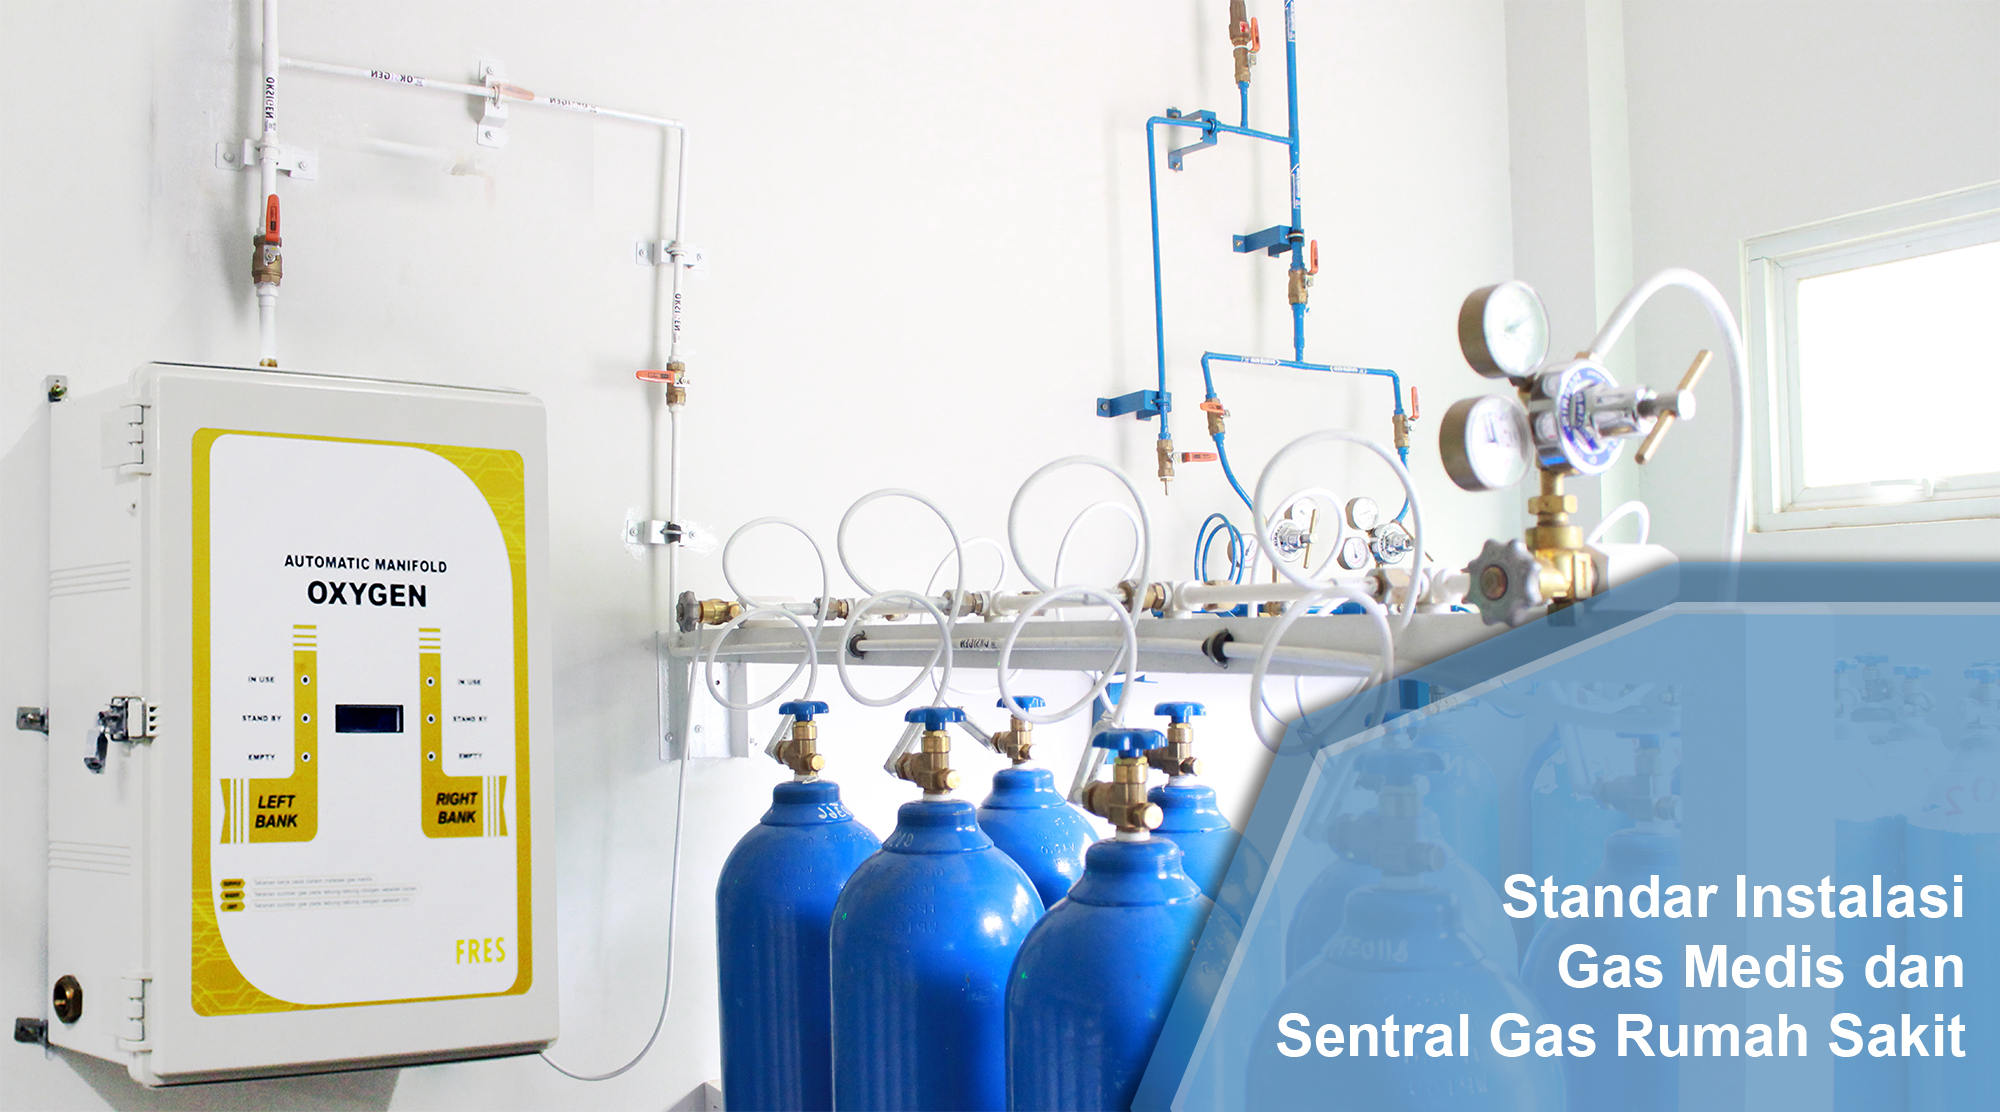 Standar instalasi gas medis dan sentral gas rumah sakit